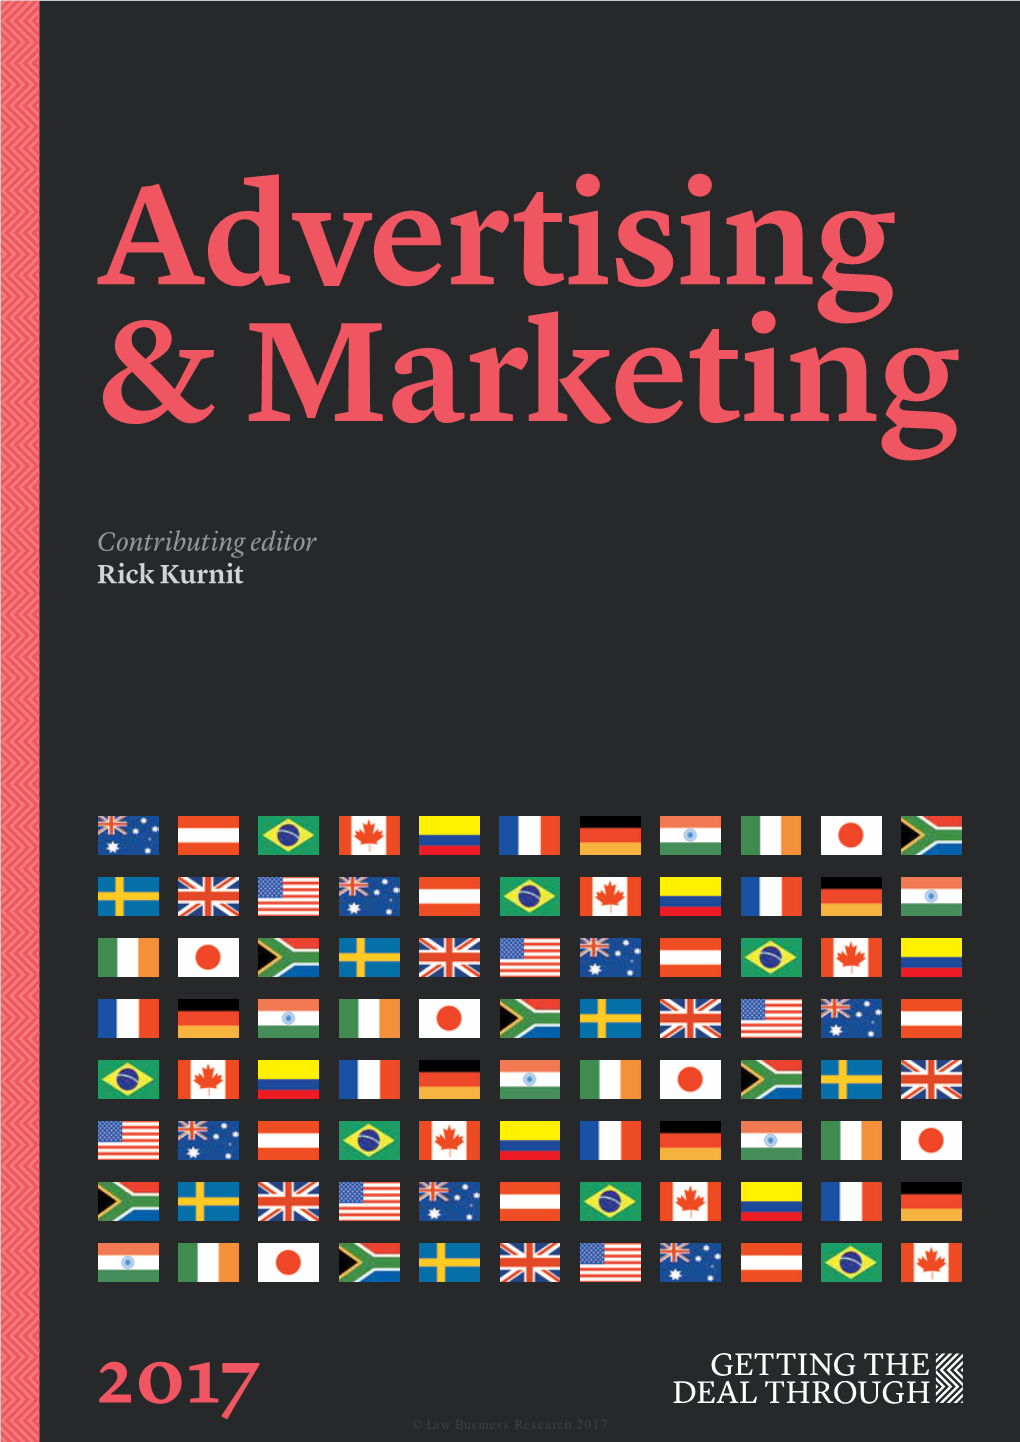 Advertising & Marketing Contributing Editor Rick Kurnit